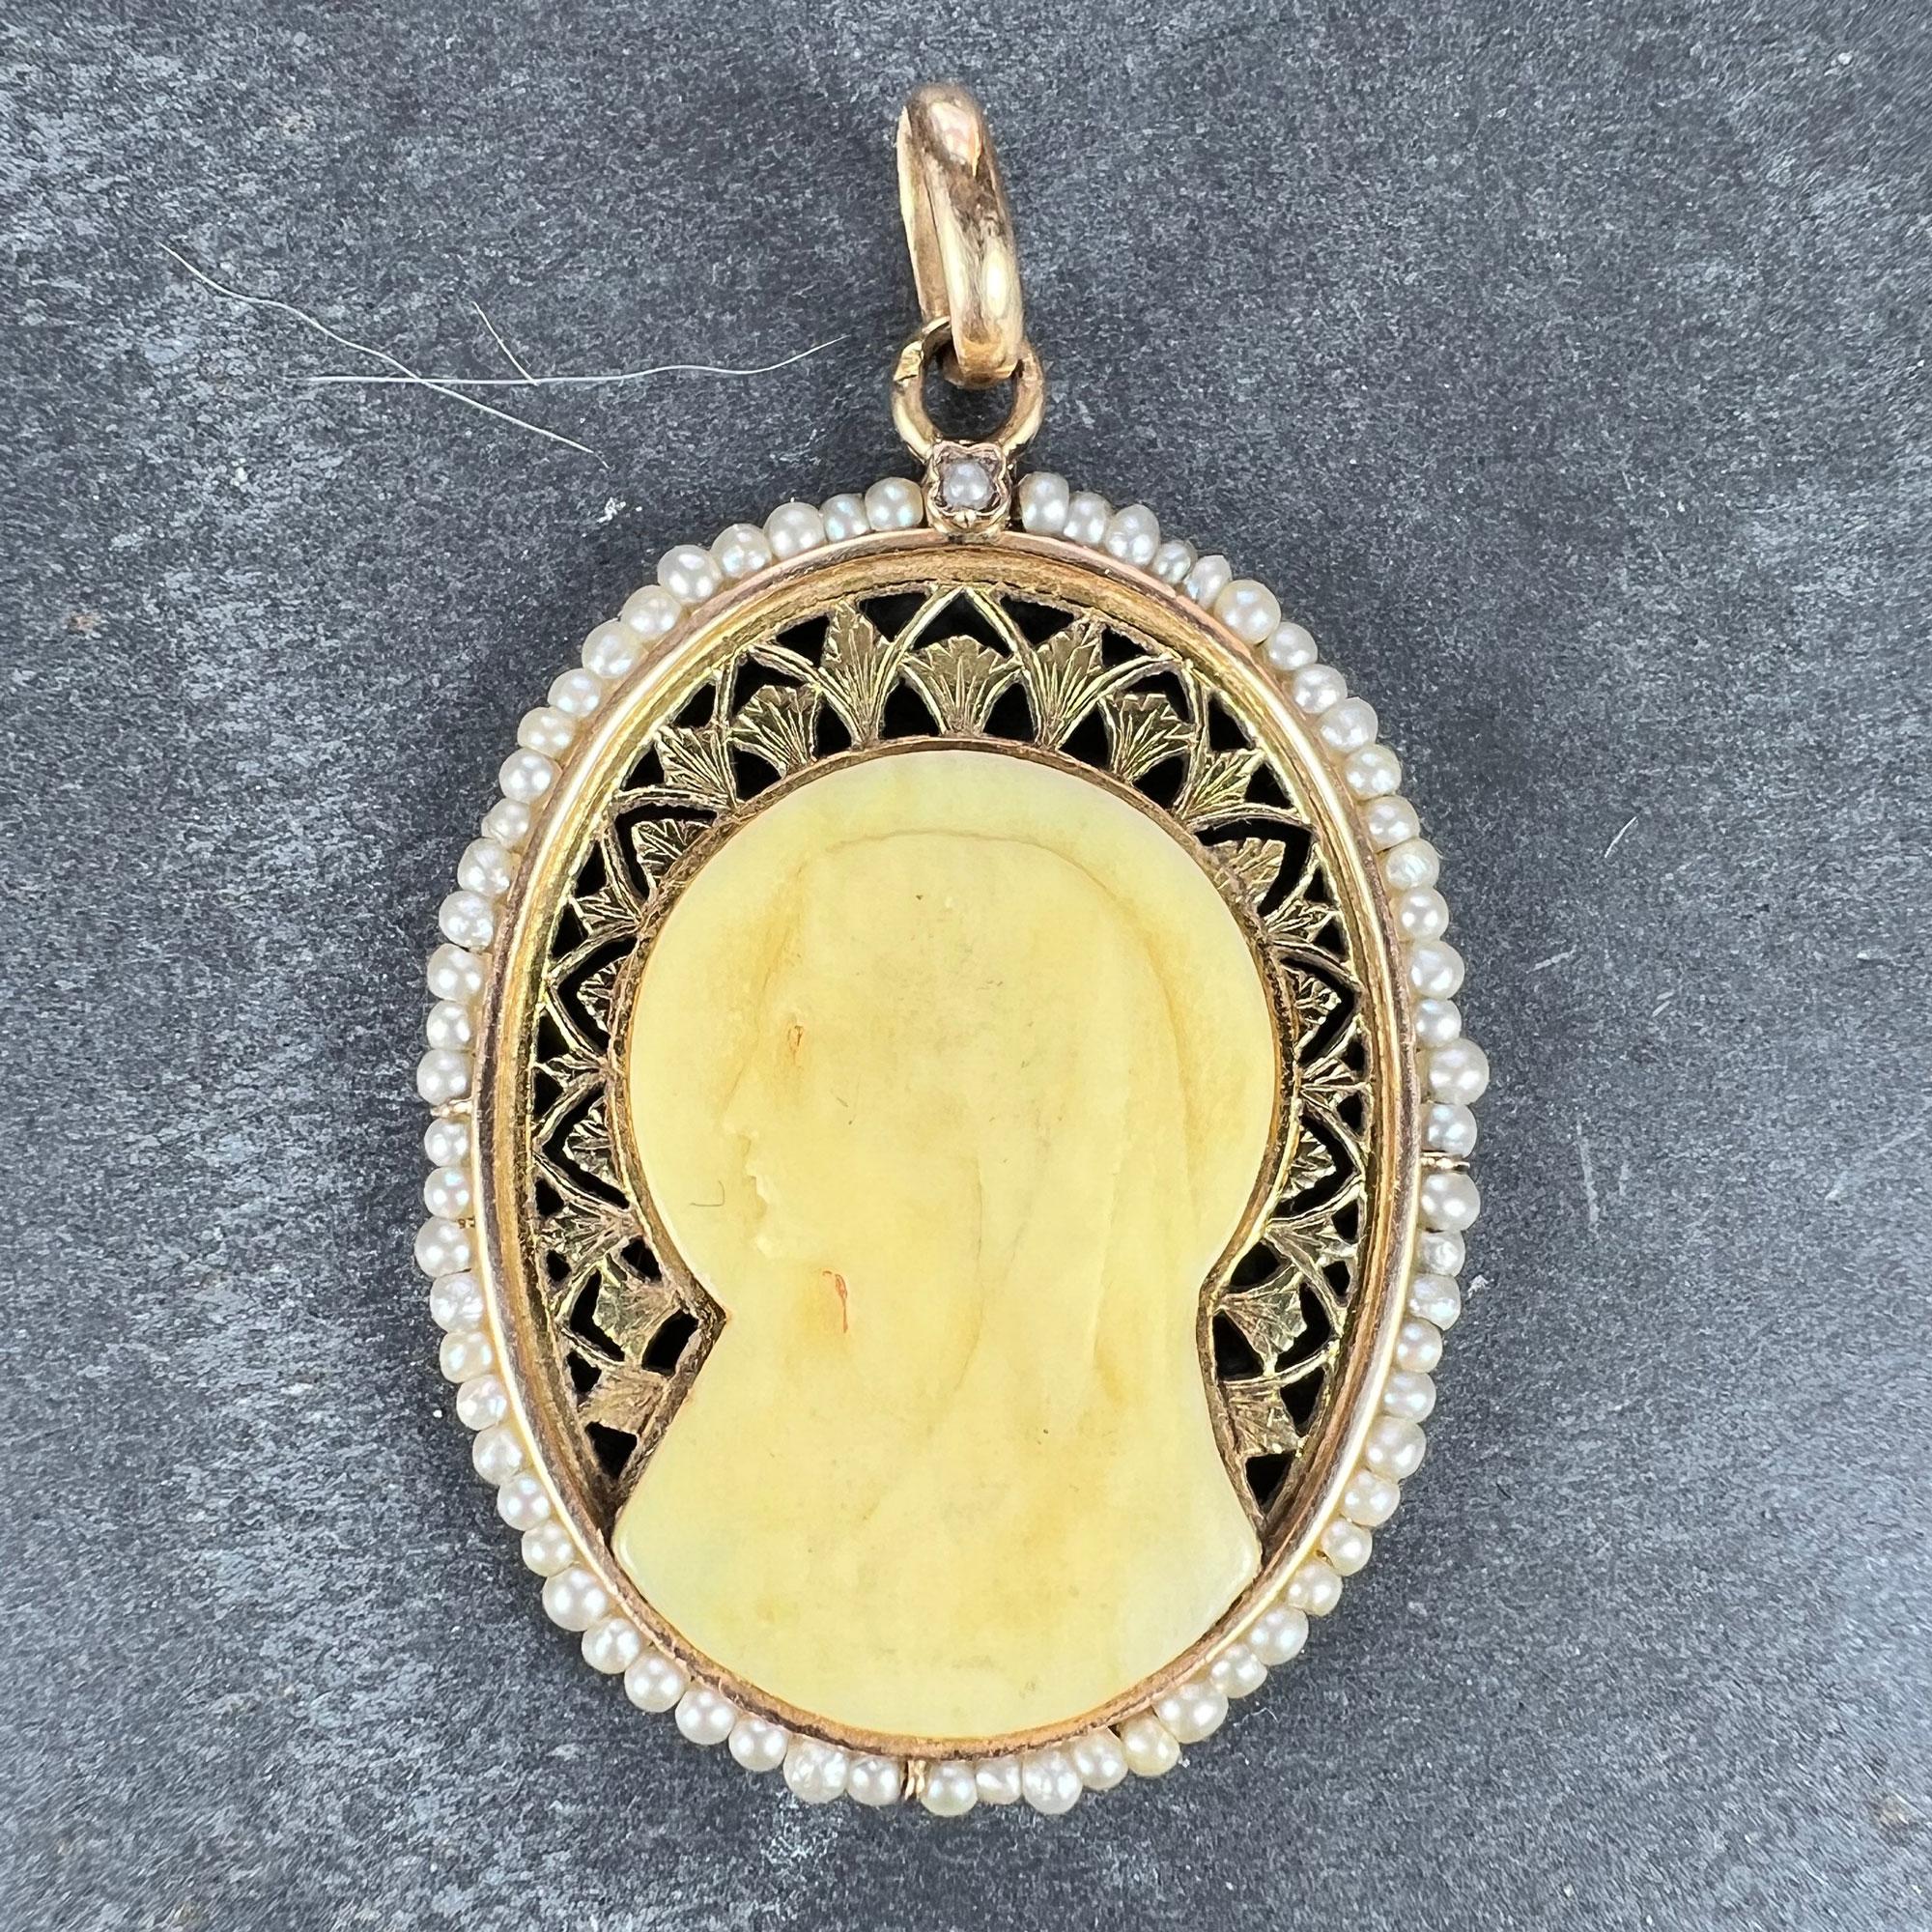 Ein französischer Anhänger aus 18-karätigem Gelbgold in Form eines Ovals, das die Jungfrau Maria als Bakelit-Kamee in einem durchbrochenen Rahmen darstellt, umgeben von 66 natürlichen weißen Saatperlen und einer einzelnen Saatperlenkette an der